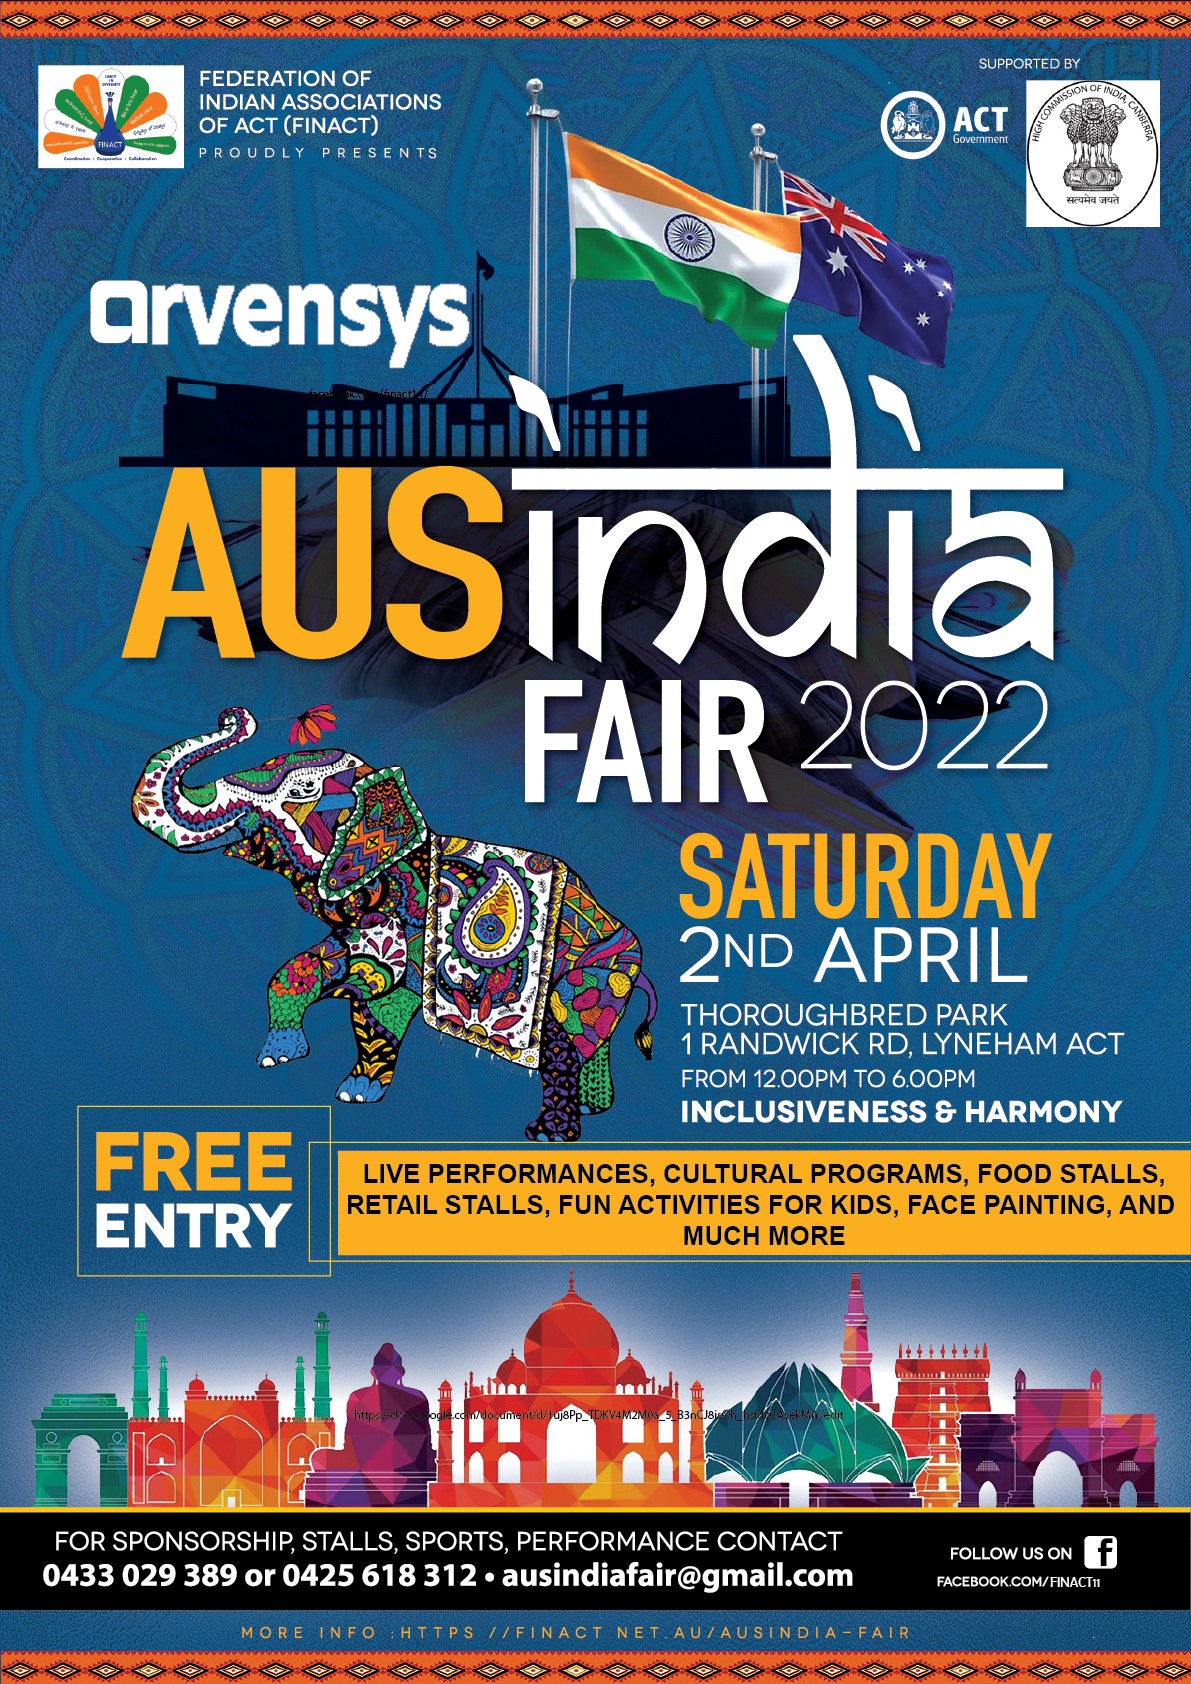 AusIndia Fair 2022